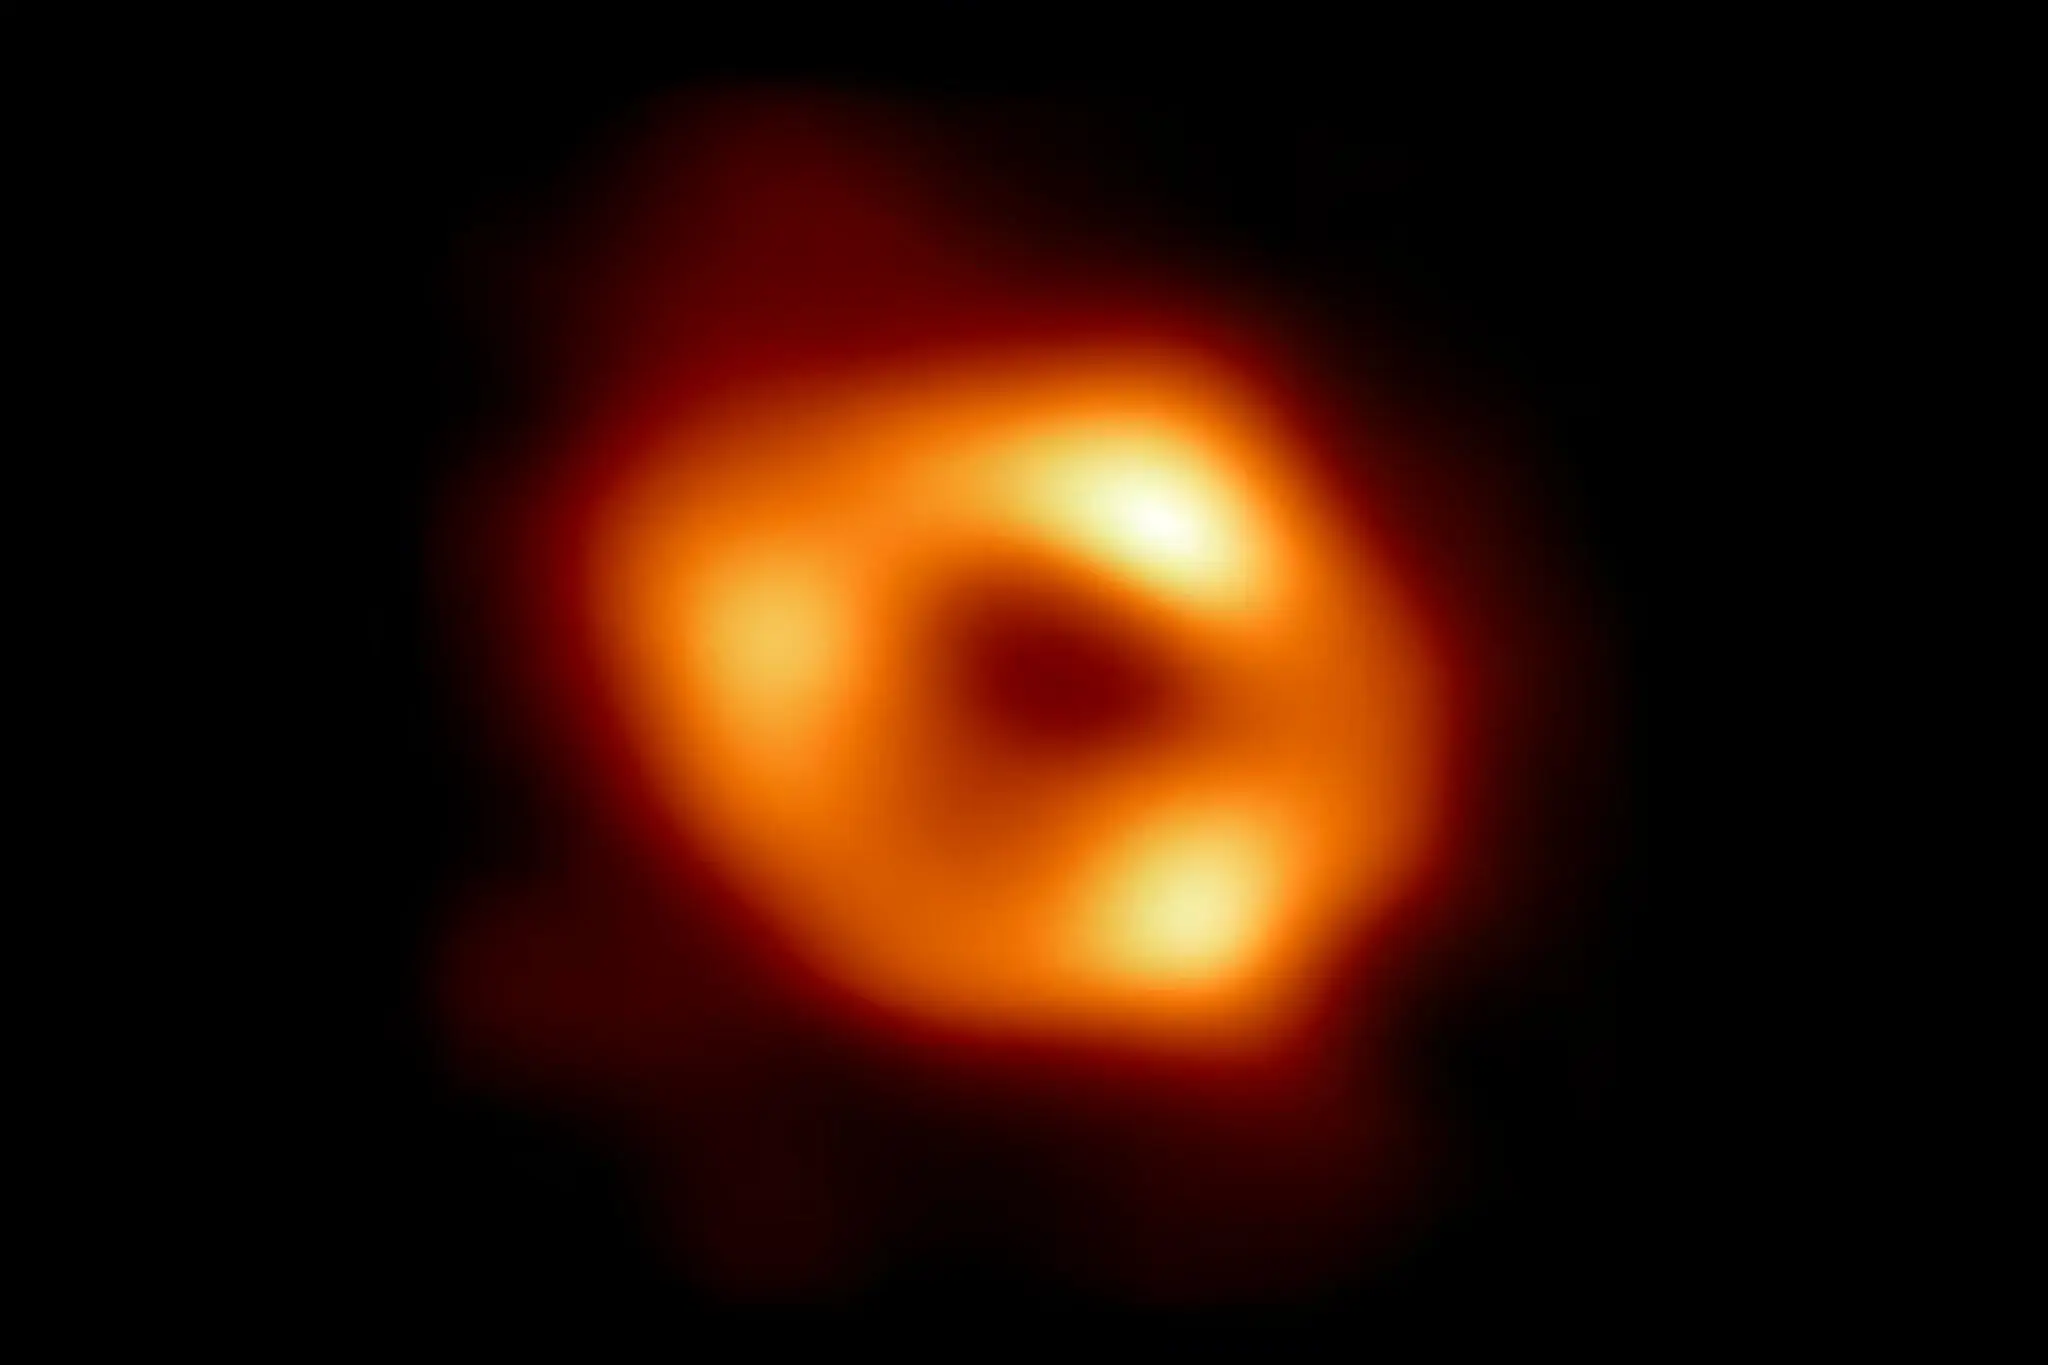 O Sagitário A* é um buraco negro supermassivo que está a 26 mil anos-luz da Terra.